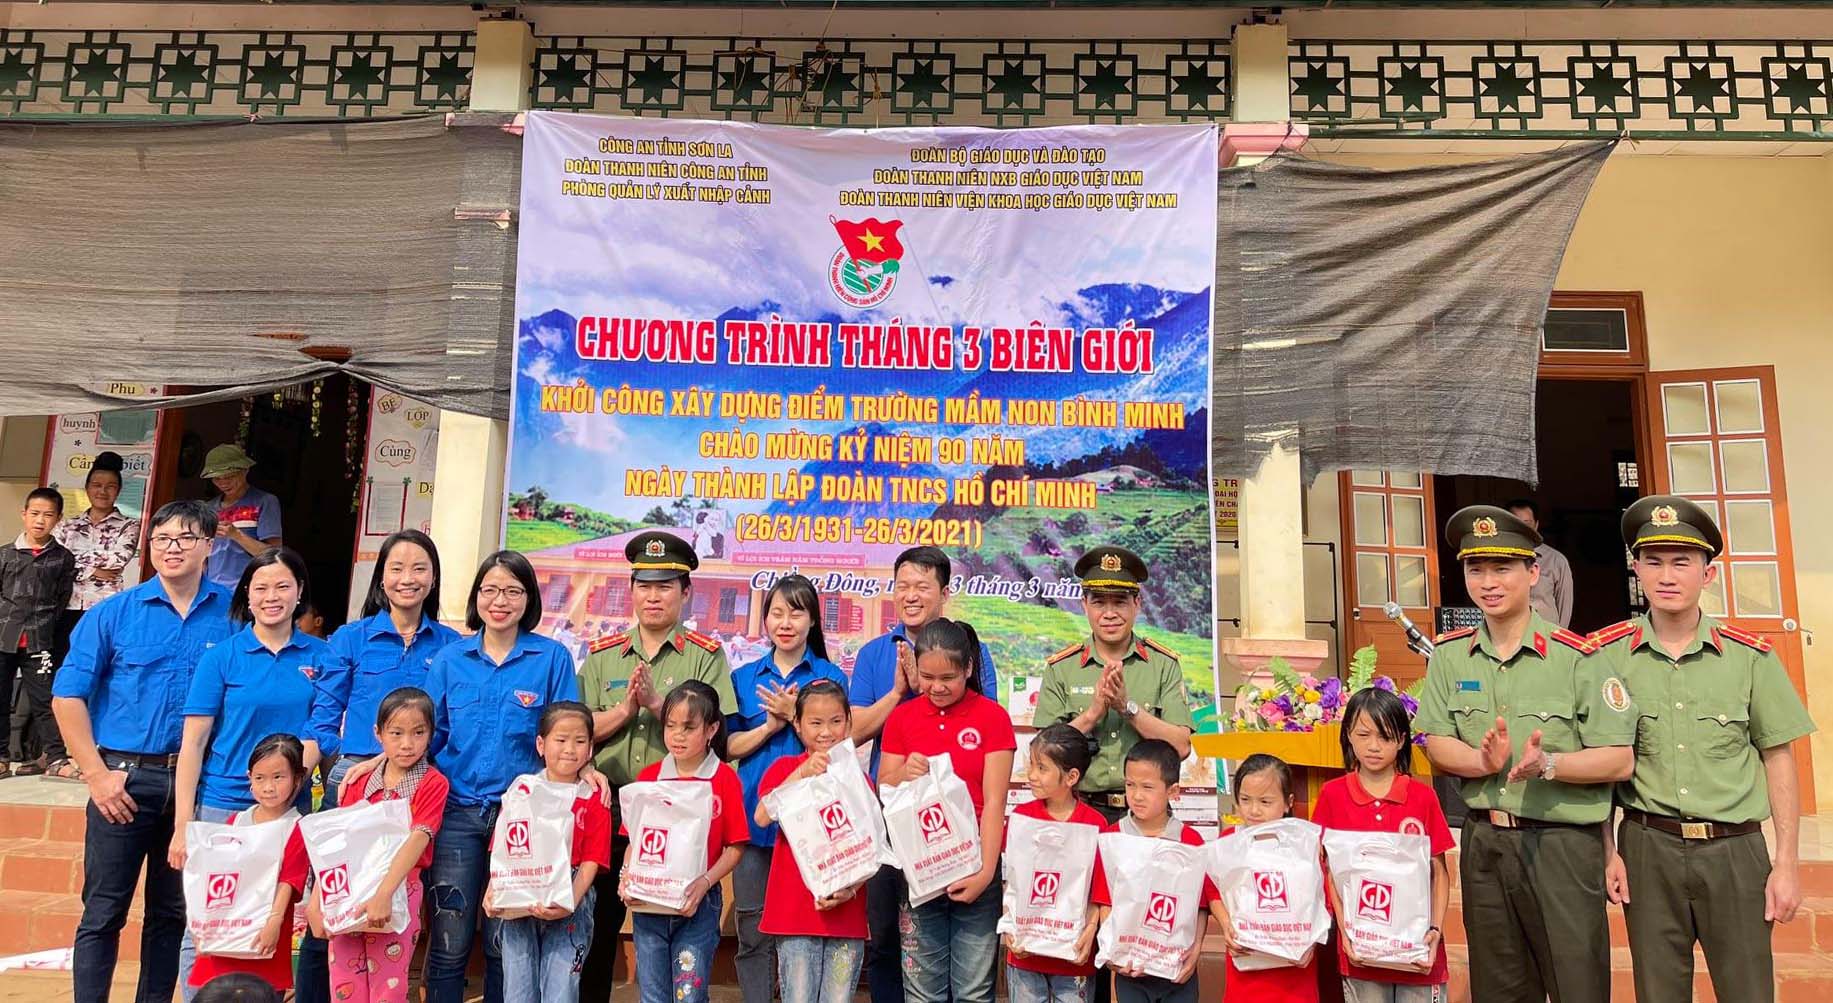 Đoàn thanh niên NXBGD Việt Nam tham gia các hoạt động chào mừng kỉ niệm 90 năm ngày thành lập Đoàn TNCS Hồ Chí Minh